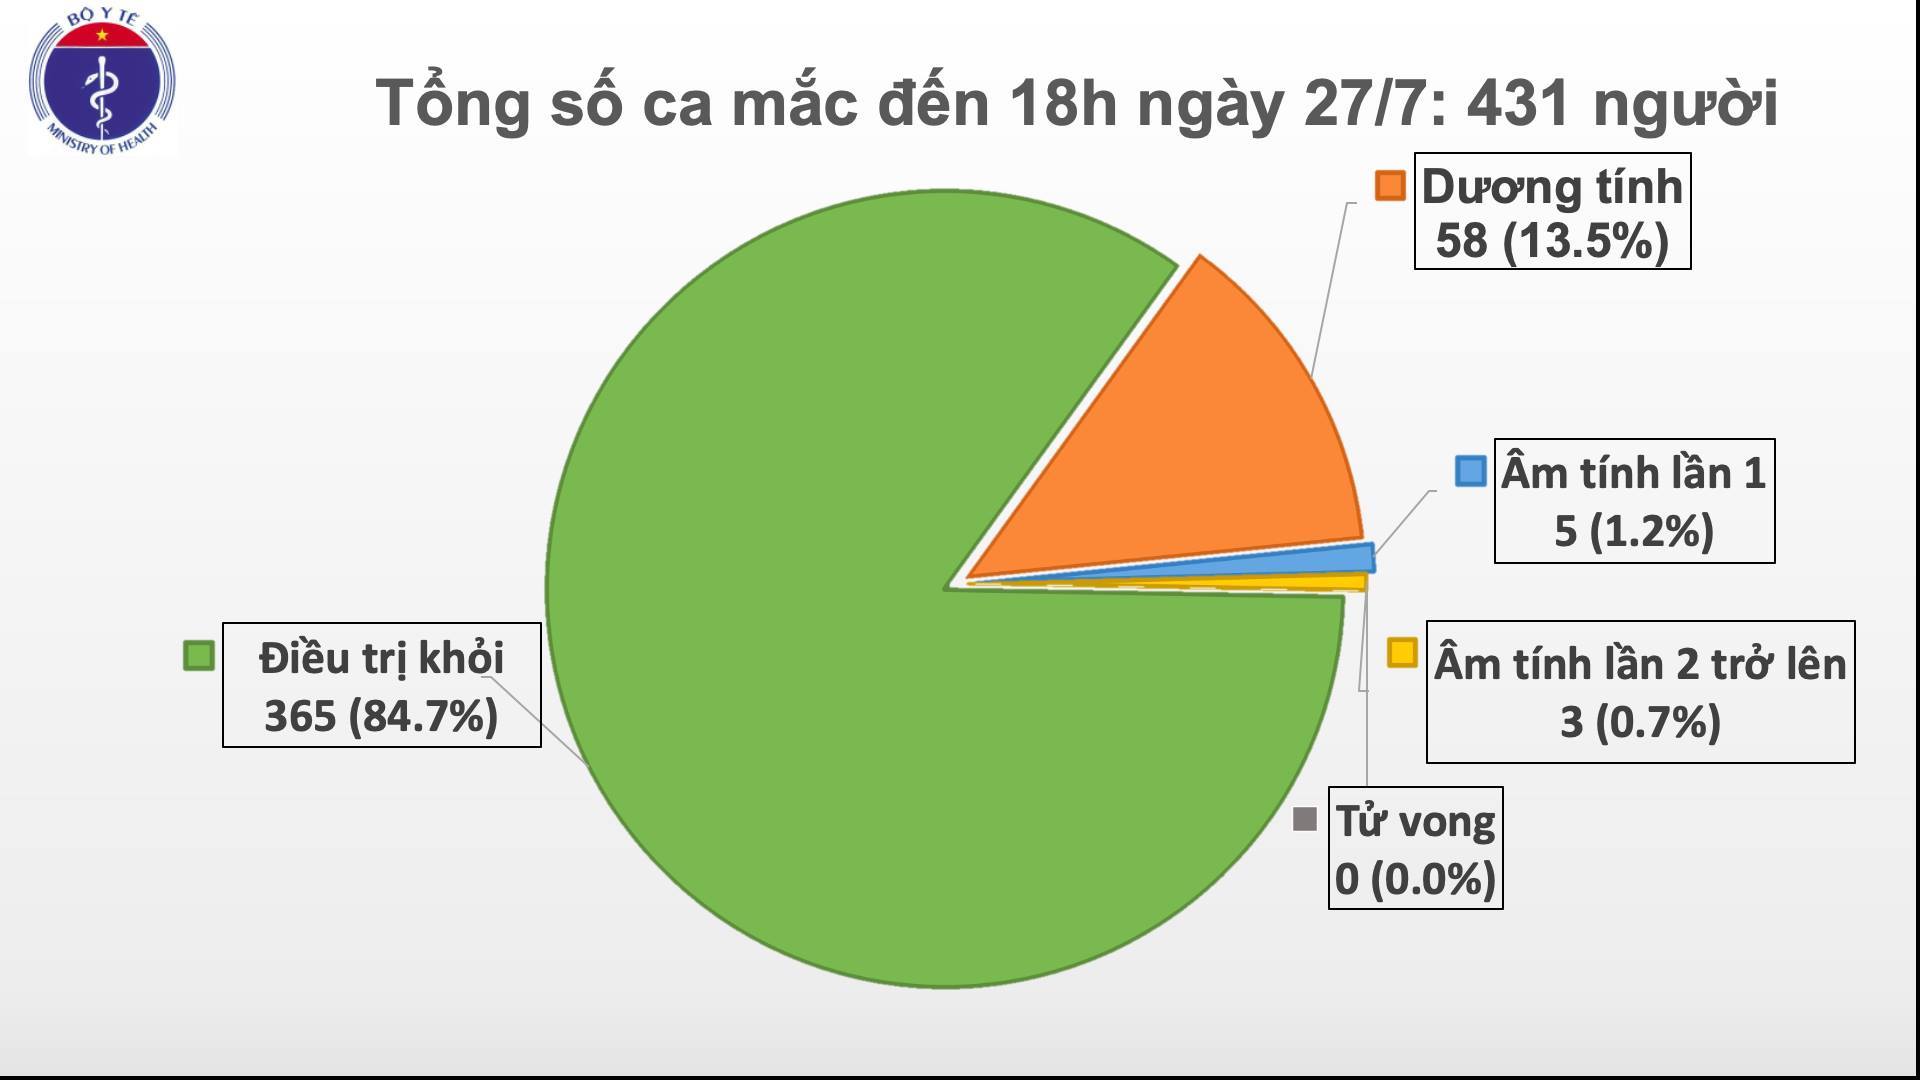 Tổng số ca mắc Covid-19 tại Việt Nam đến ngày 27/7/2020 theo Trang tin chính thức của Bộ Y tế